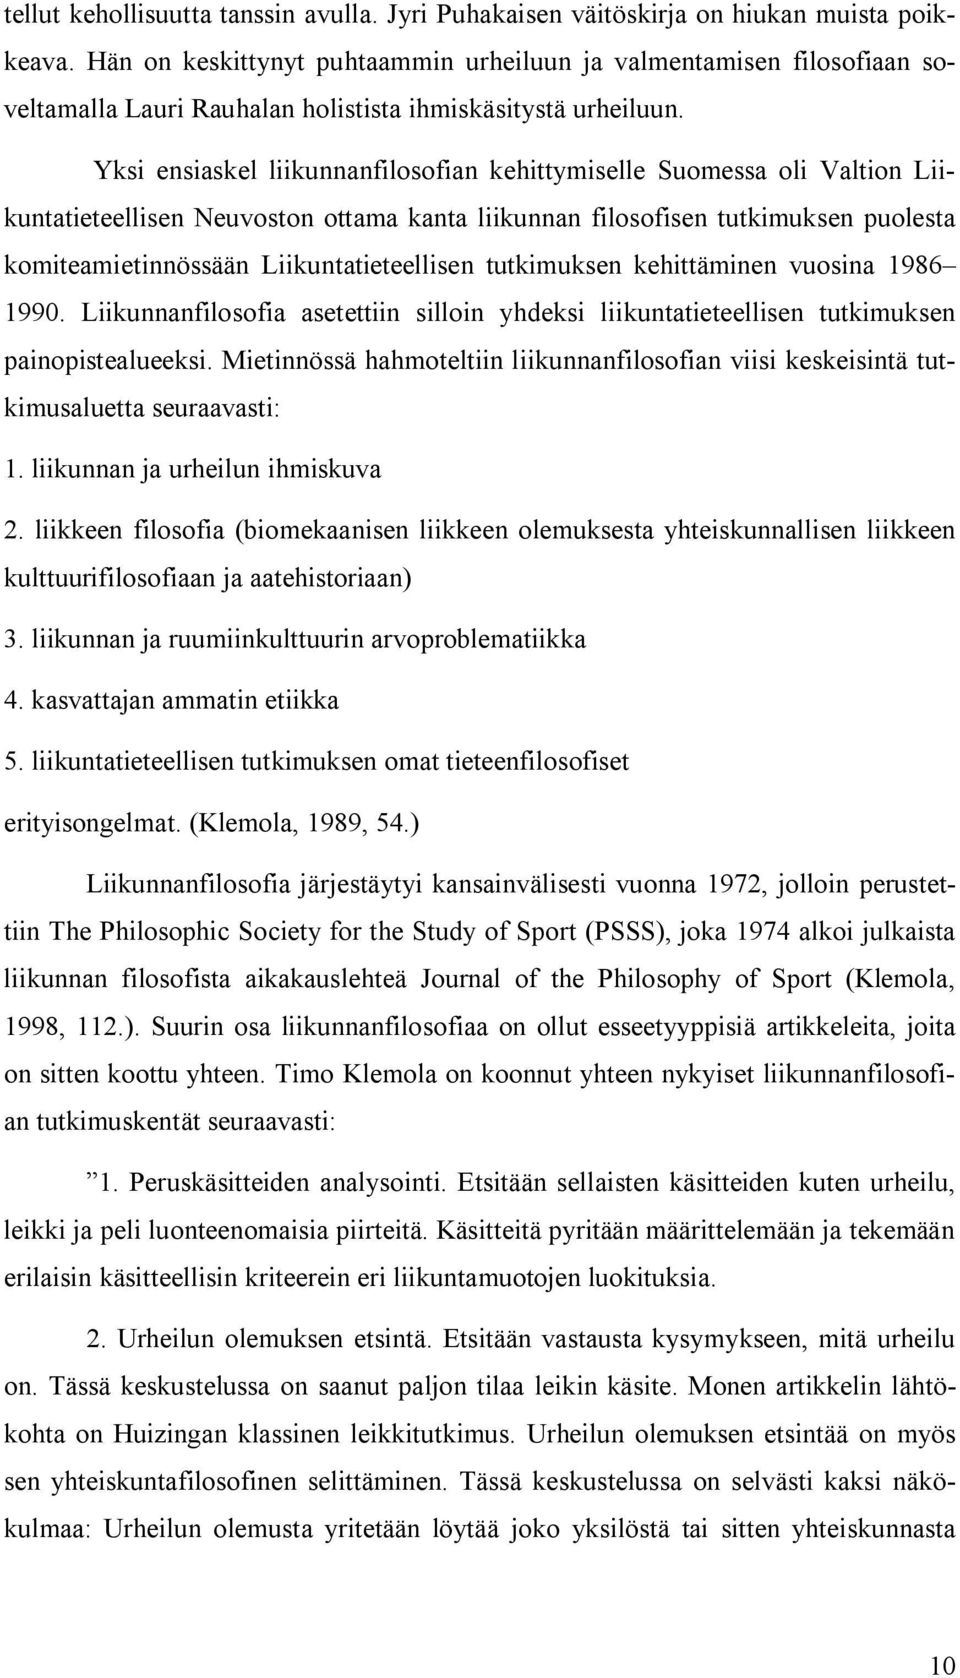 Yksi ensiaskel liikunnanfilosofian kehittymiselle Suomessa oli Valtion Liikuntatieteellisen Neuvoston ottama kanta liikunnan filosofisen tutkimuksen puolesta komiteamietinnössään Liikuntatieteellisen